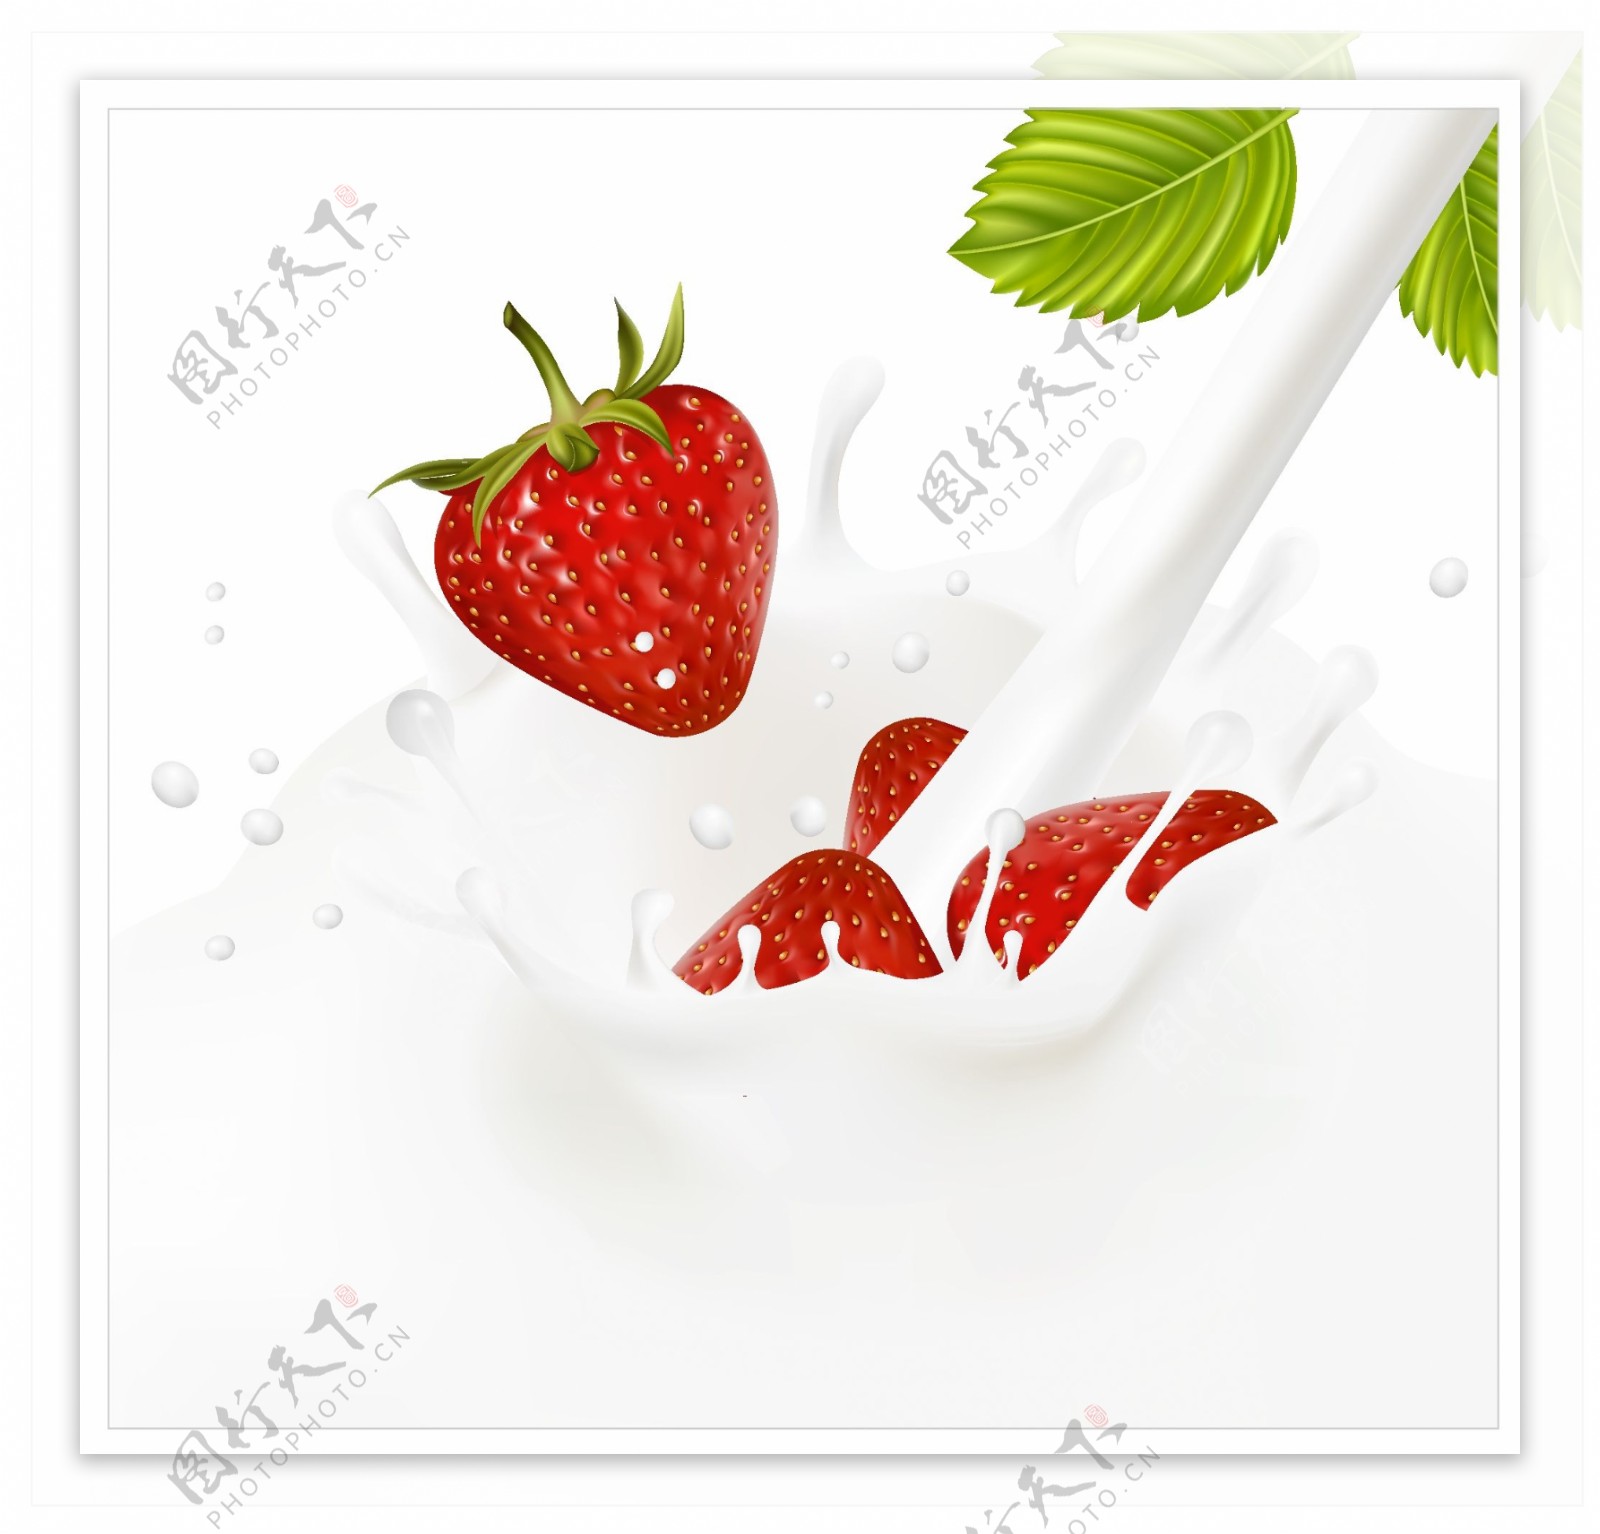 蓝莓红莓食物果蔬矢量素材